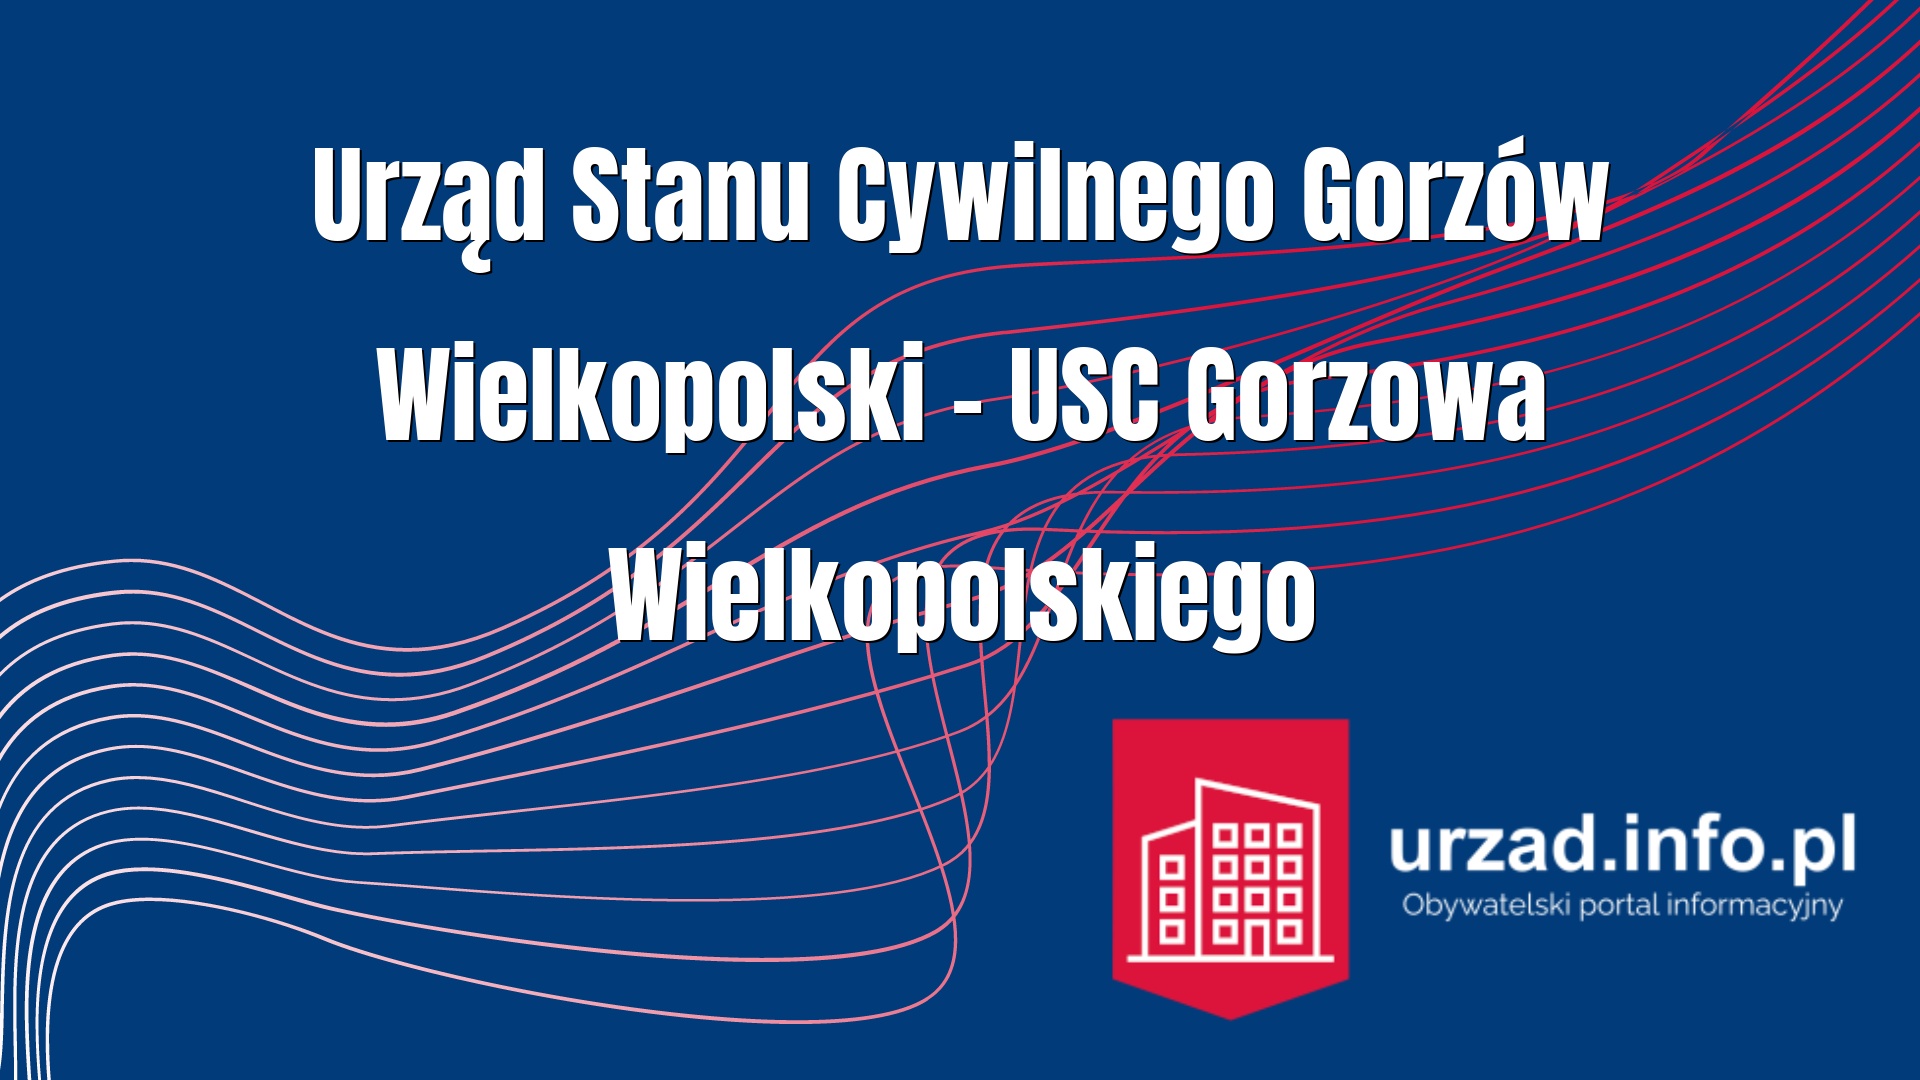 Urząd Stanu Cywilnego Gorzów Wielkopolski – USC Gorzowa Wielkopolskiego